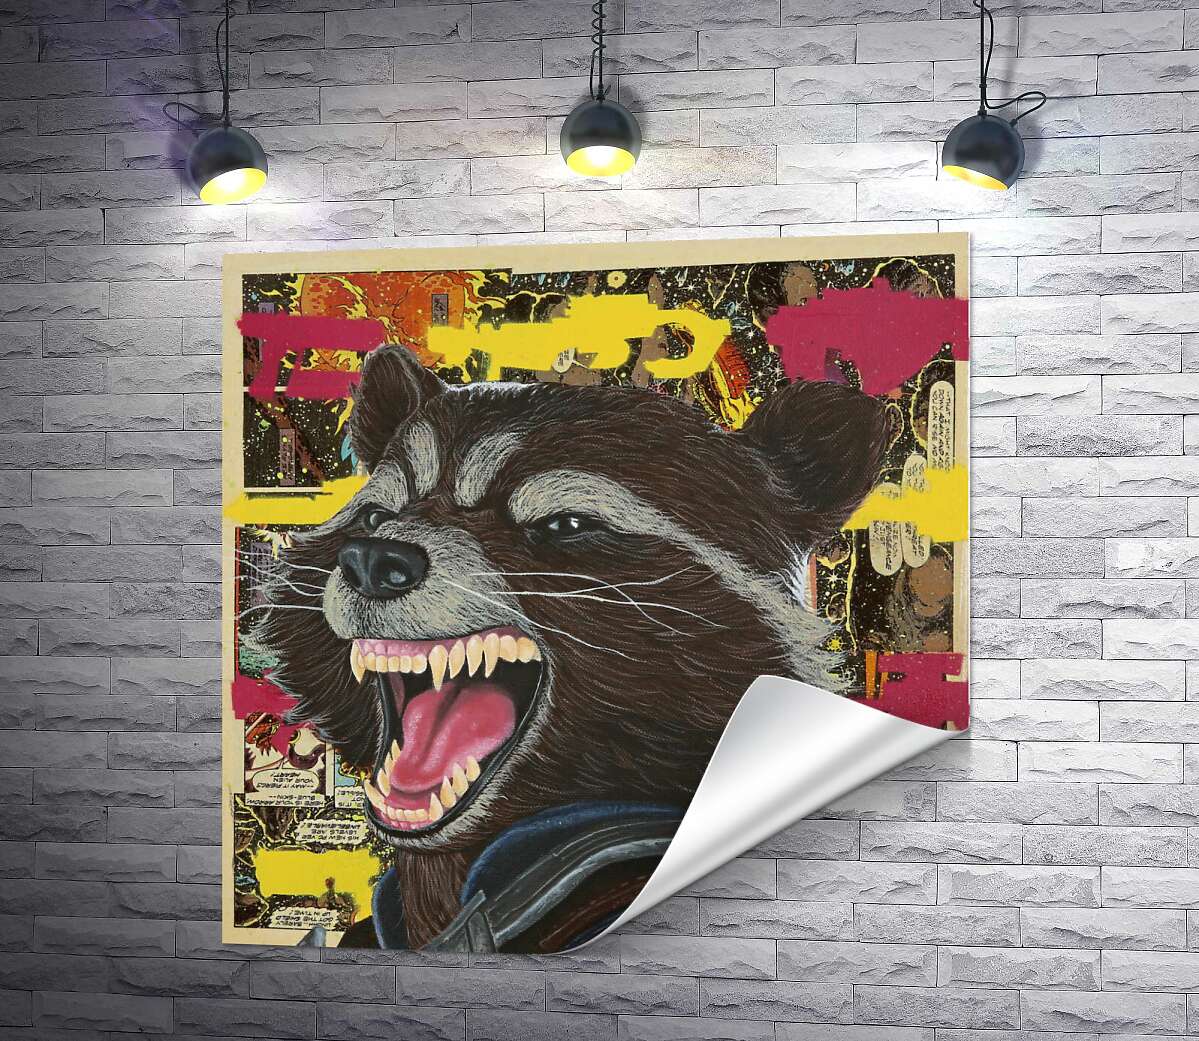 друк Ракетний єнот (Rocket raccoon) скалить зуби